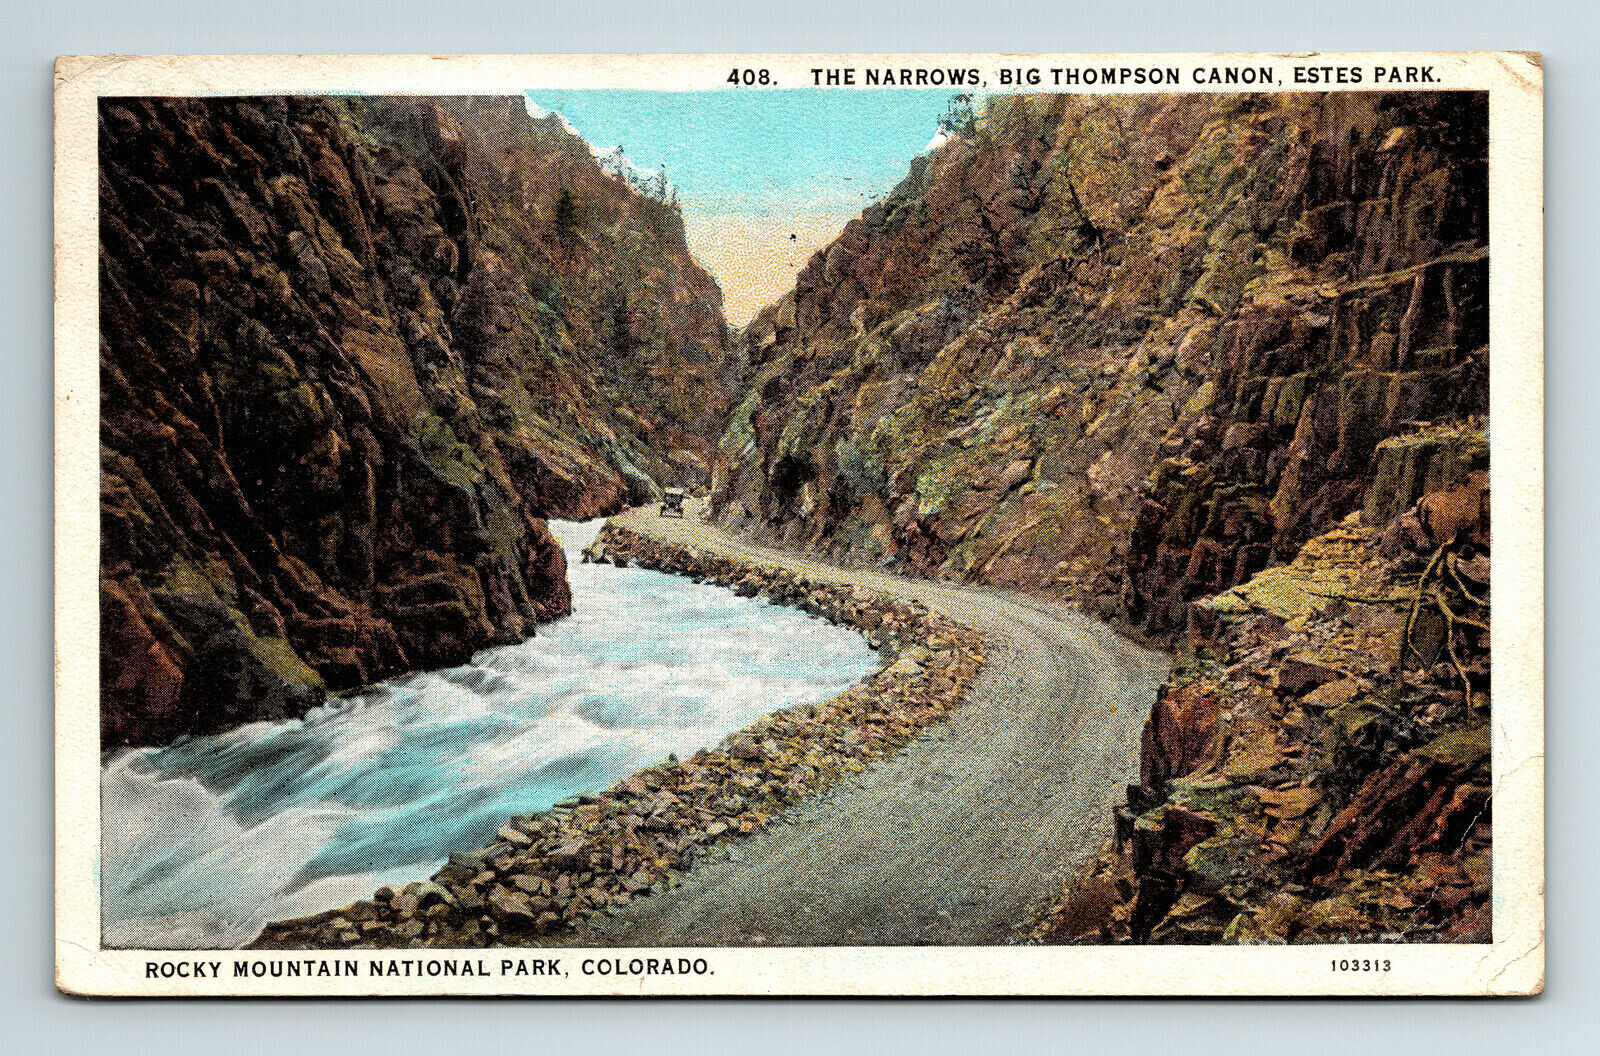 c1927 Postcard Estes Park CO Big Thompson Canyon Narrows Car Canon